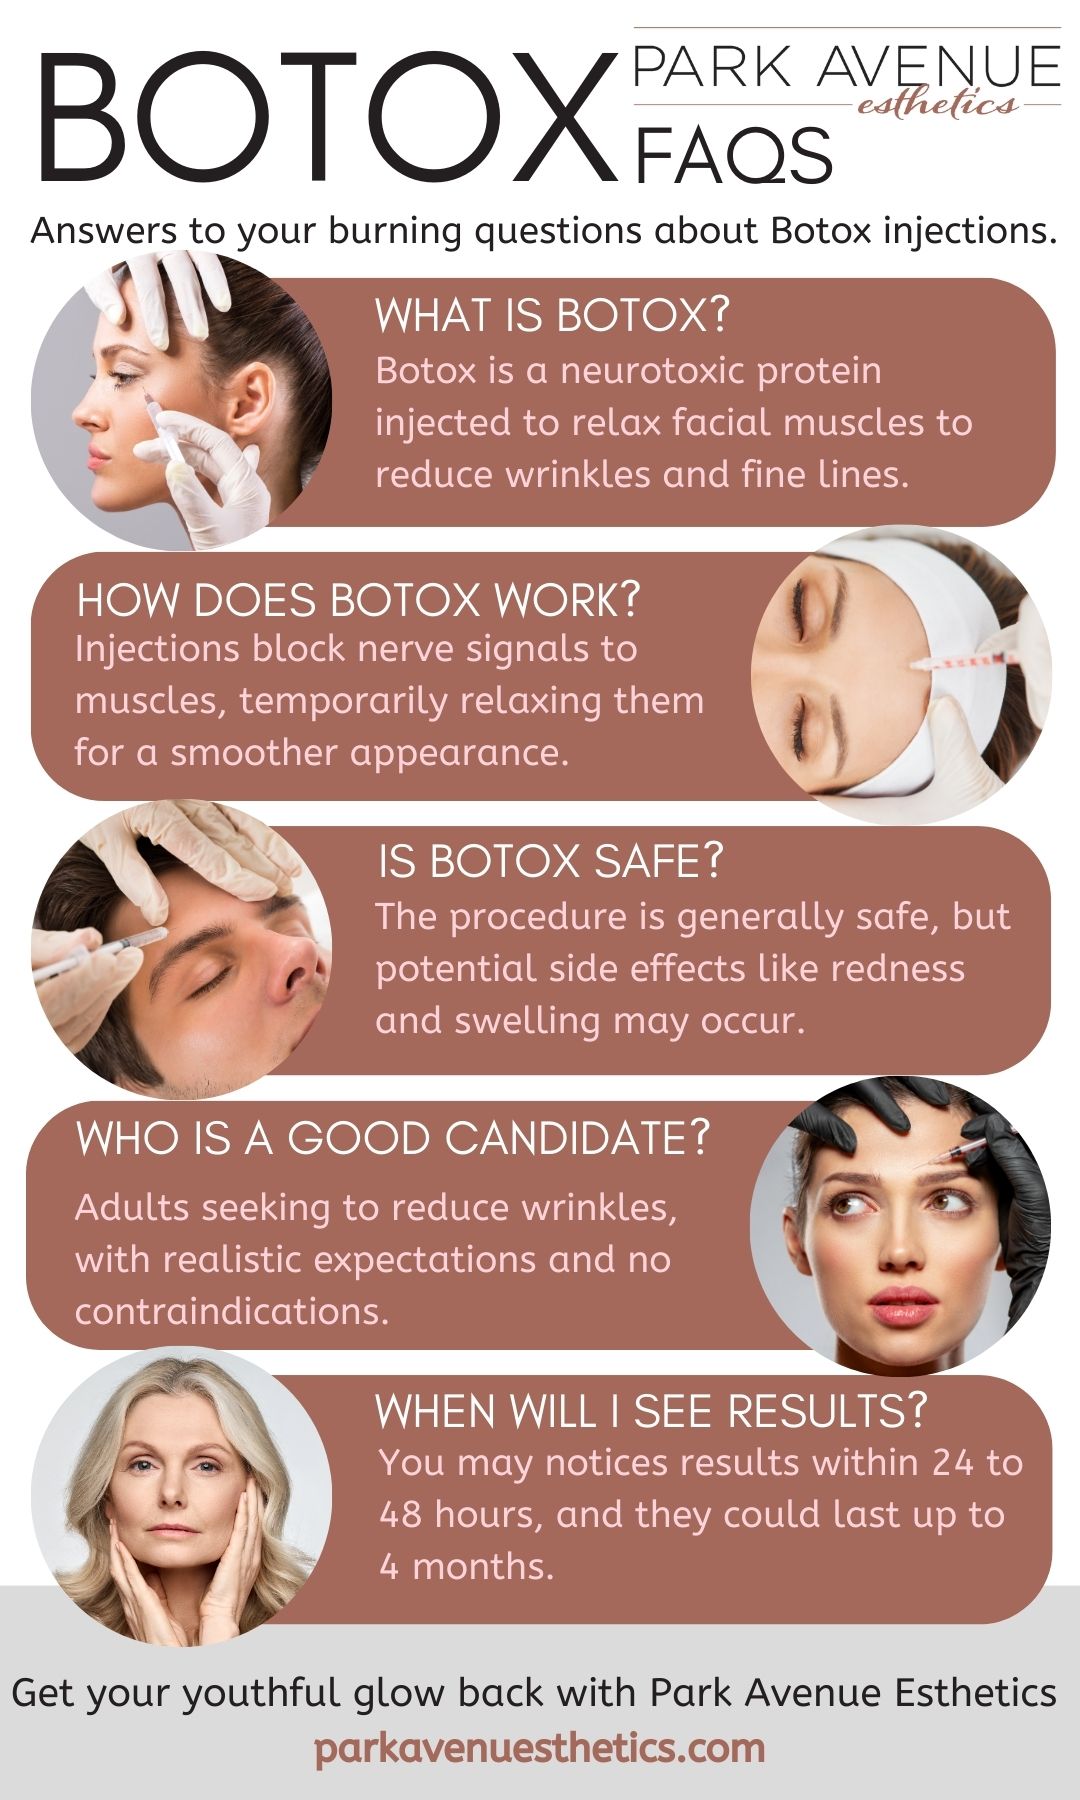 M37240 - Park Avenue Esthetics - Botox FAQs